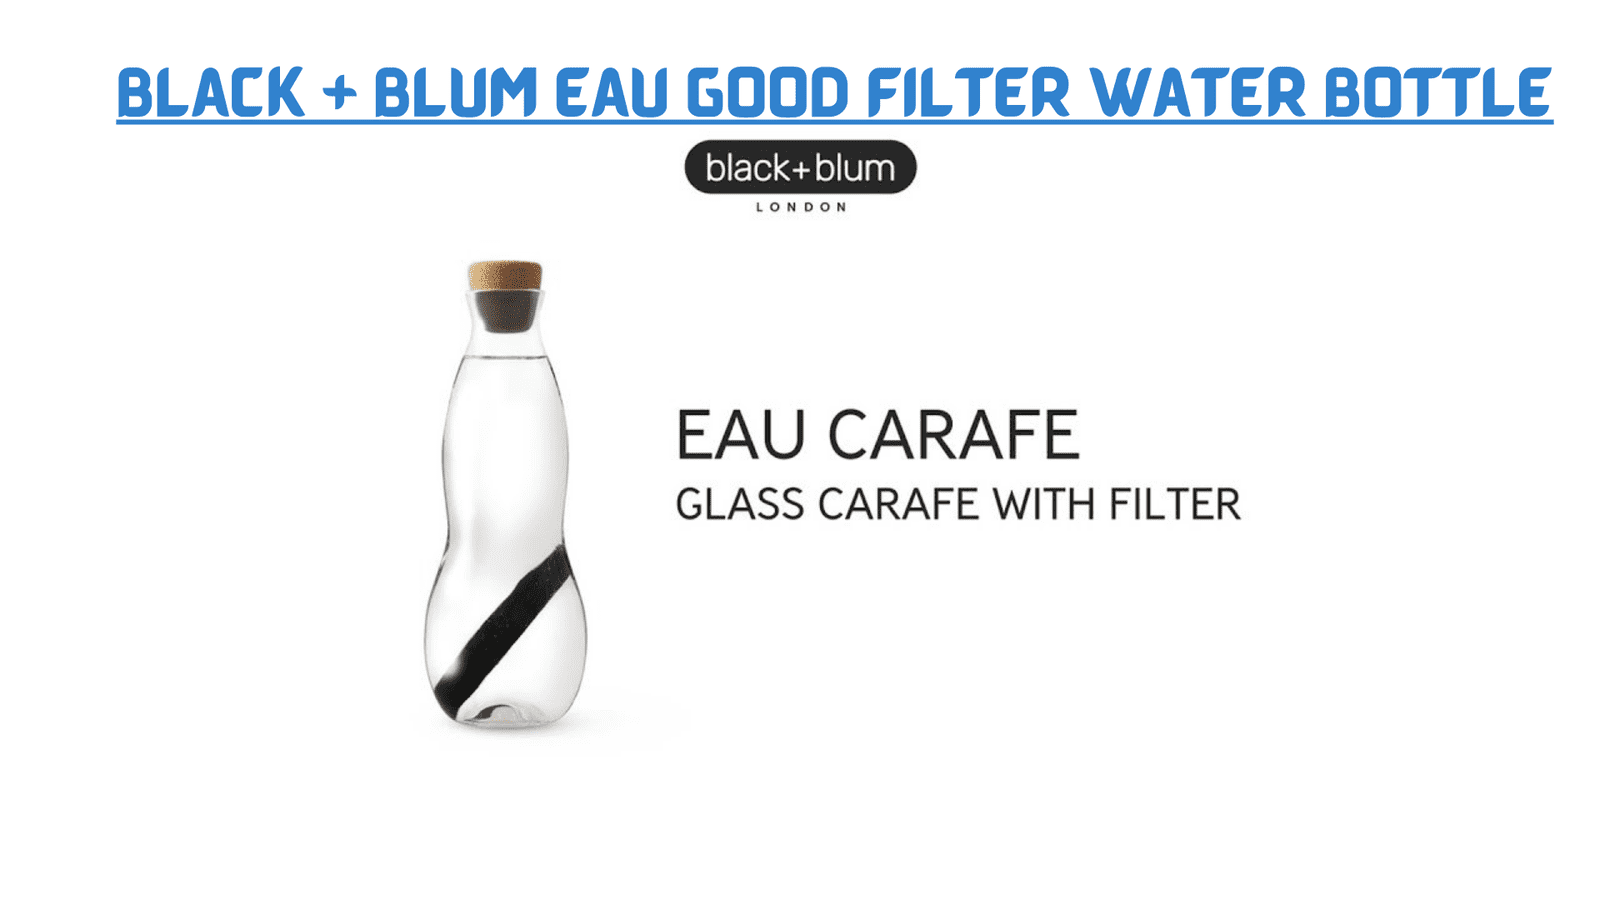 Black + Blum Eau Good Filter Water Bottle